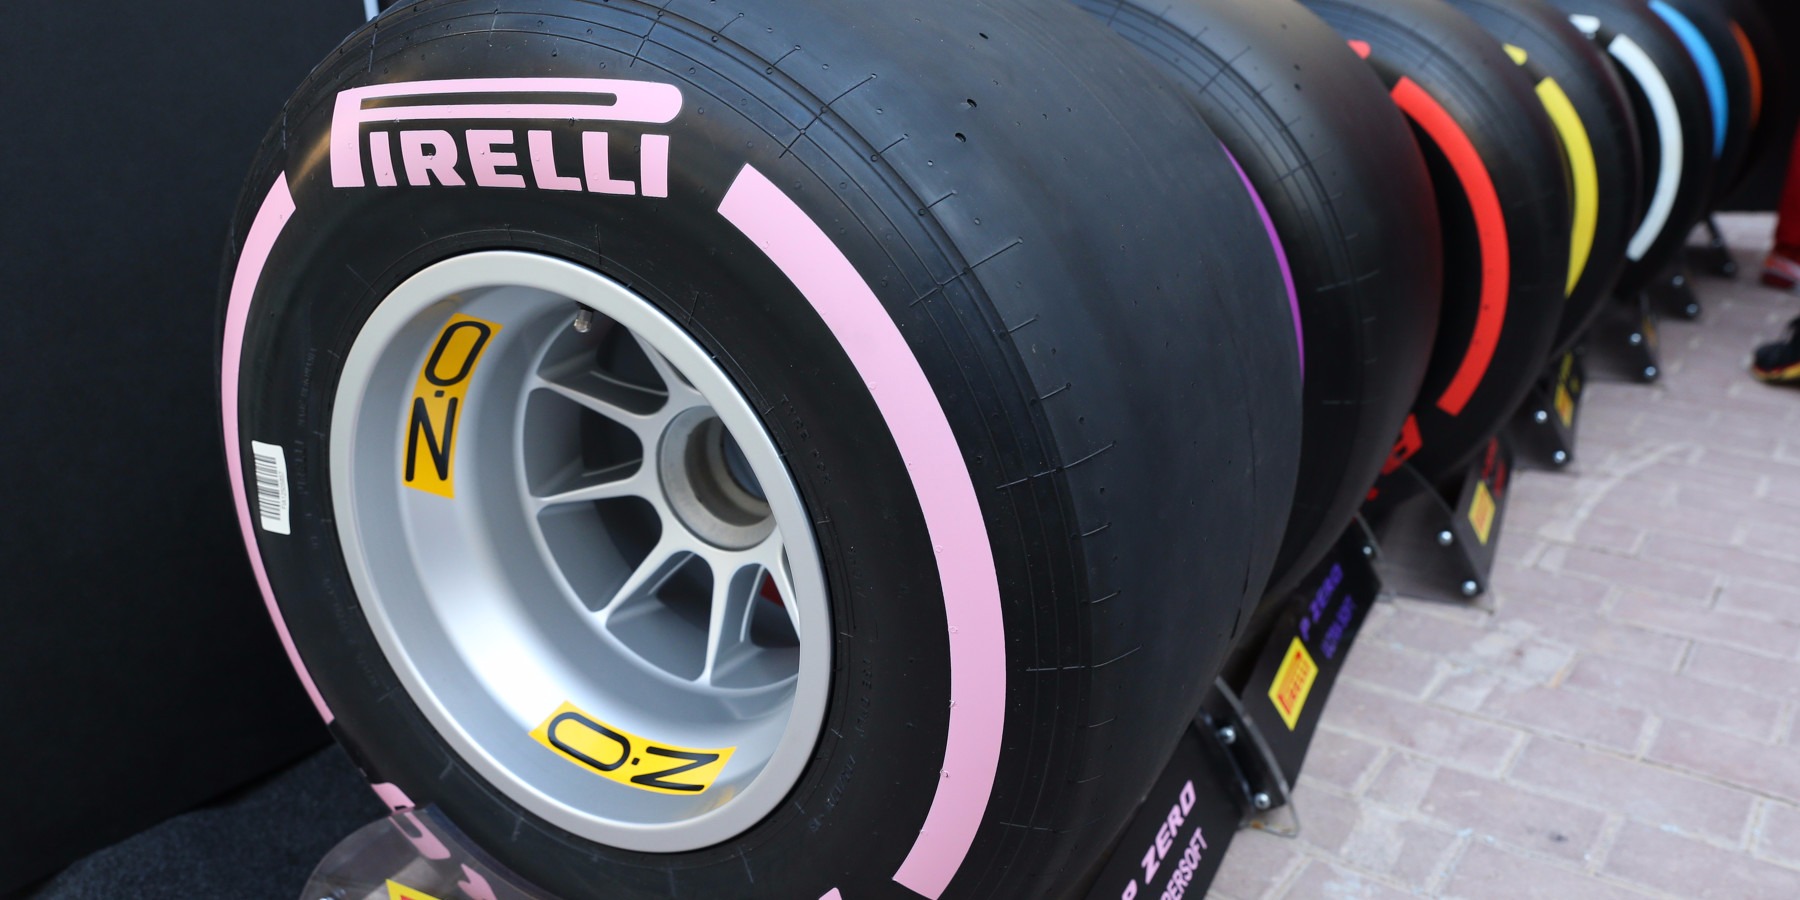 Formel-1-Reifen 2018: Pirelli führt zwei neue Mischungen ein